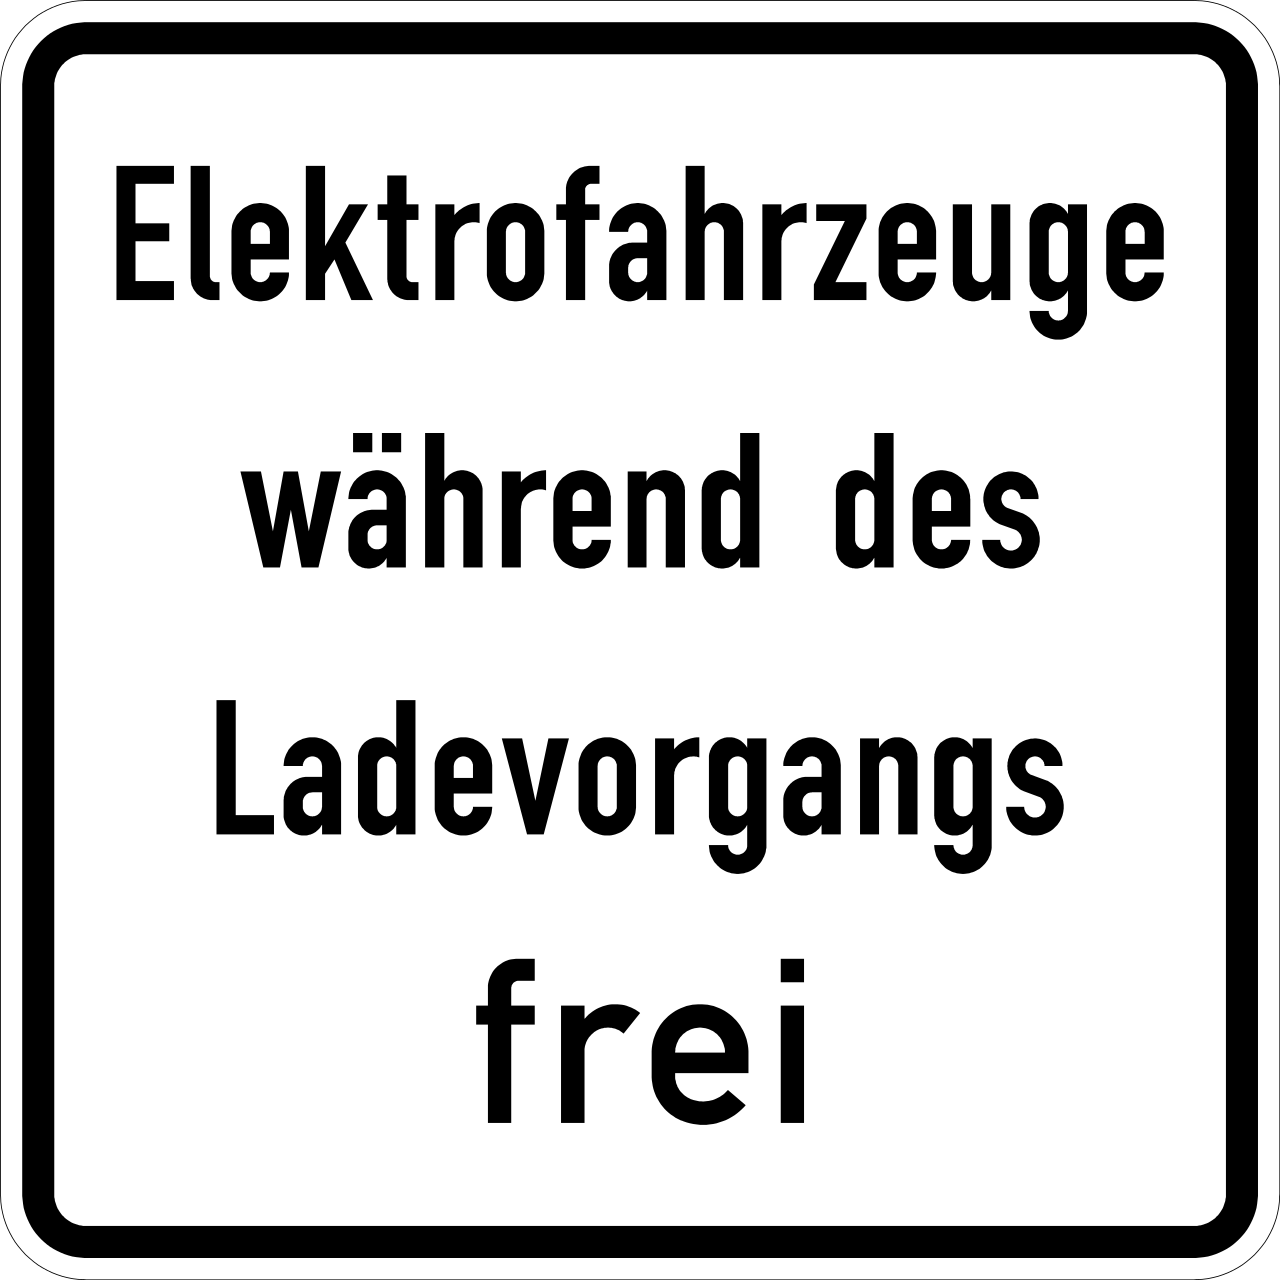 Elektrofahrzeuge wäh­rend des Ladevorgangs frei (VzKat 1026.60)